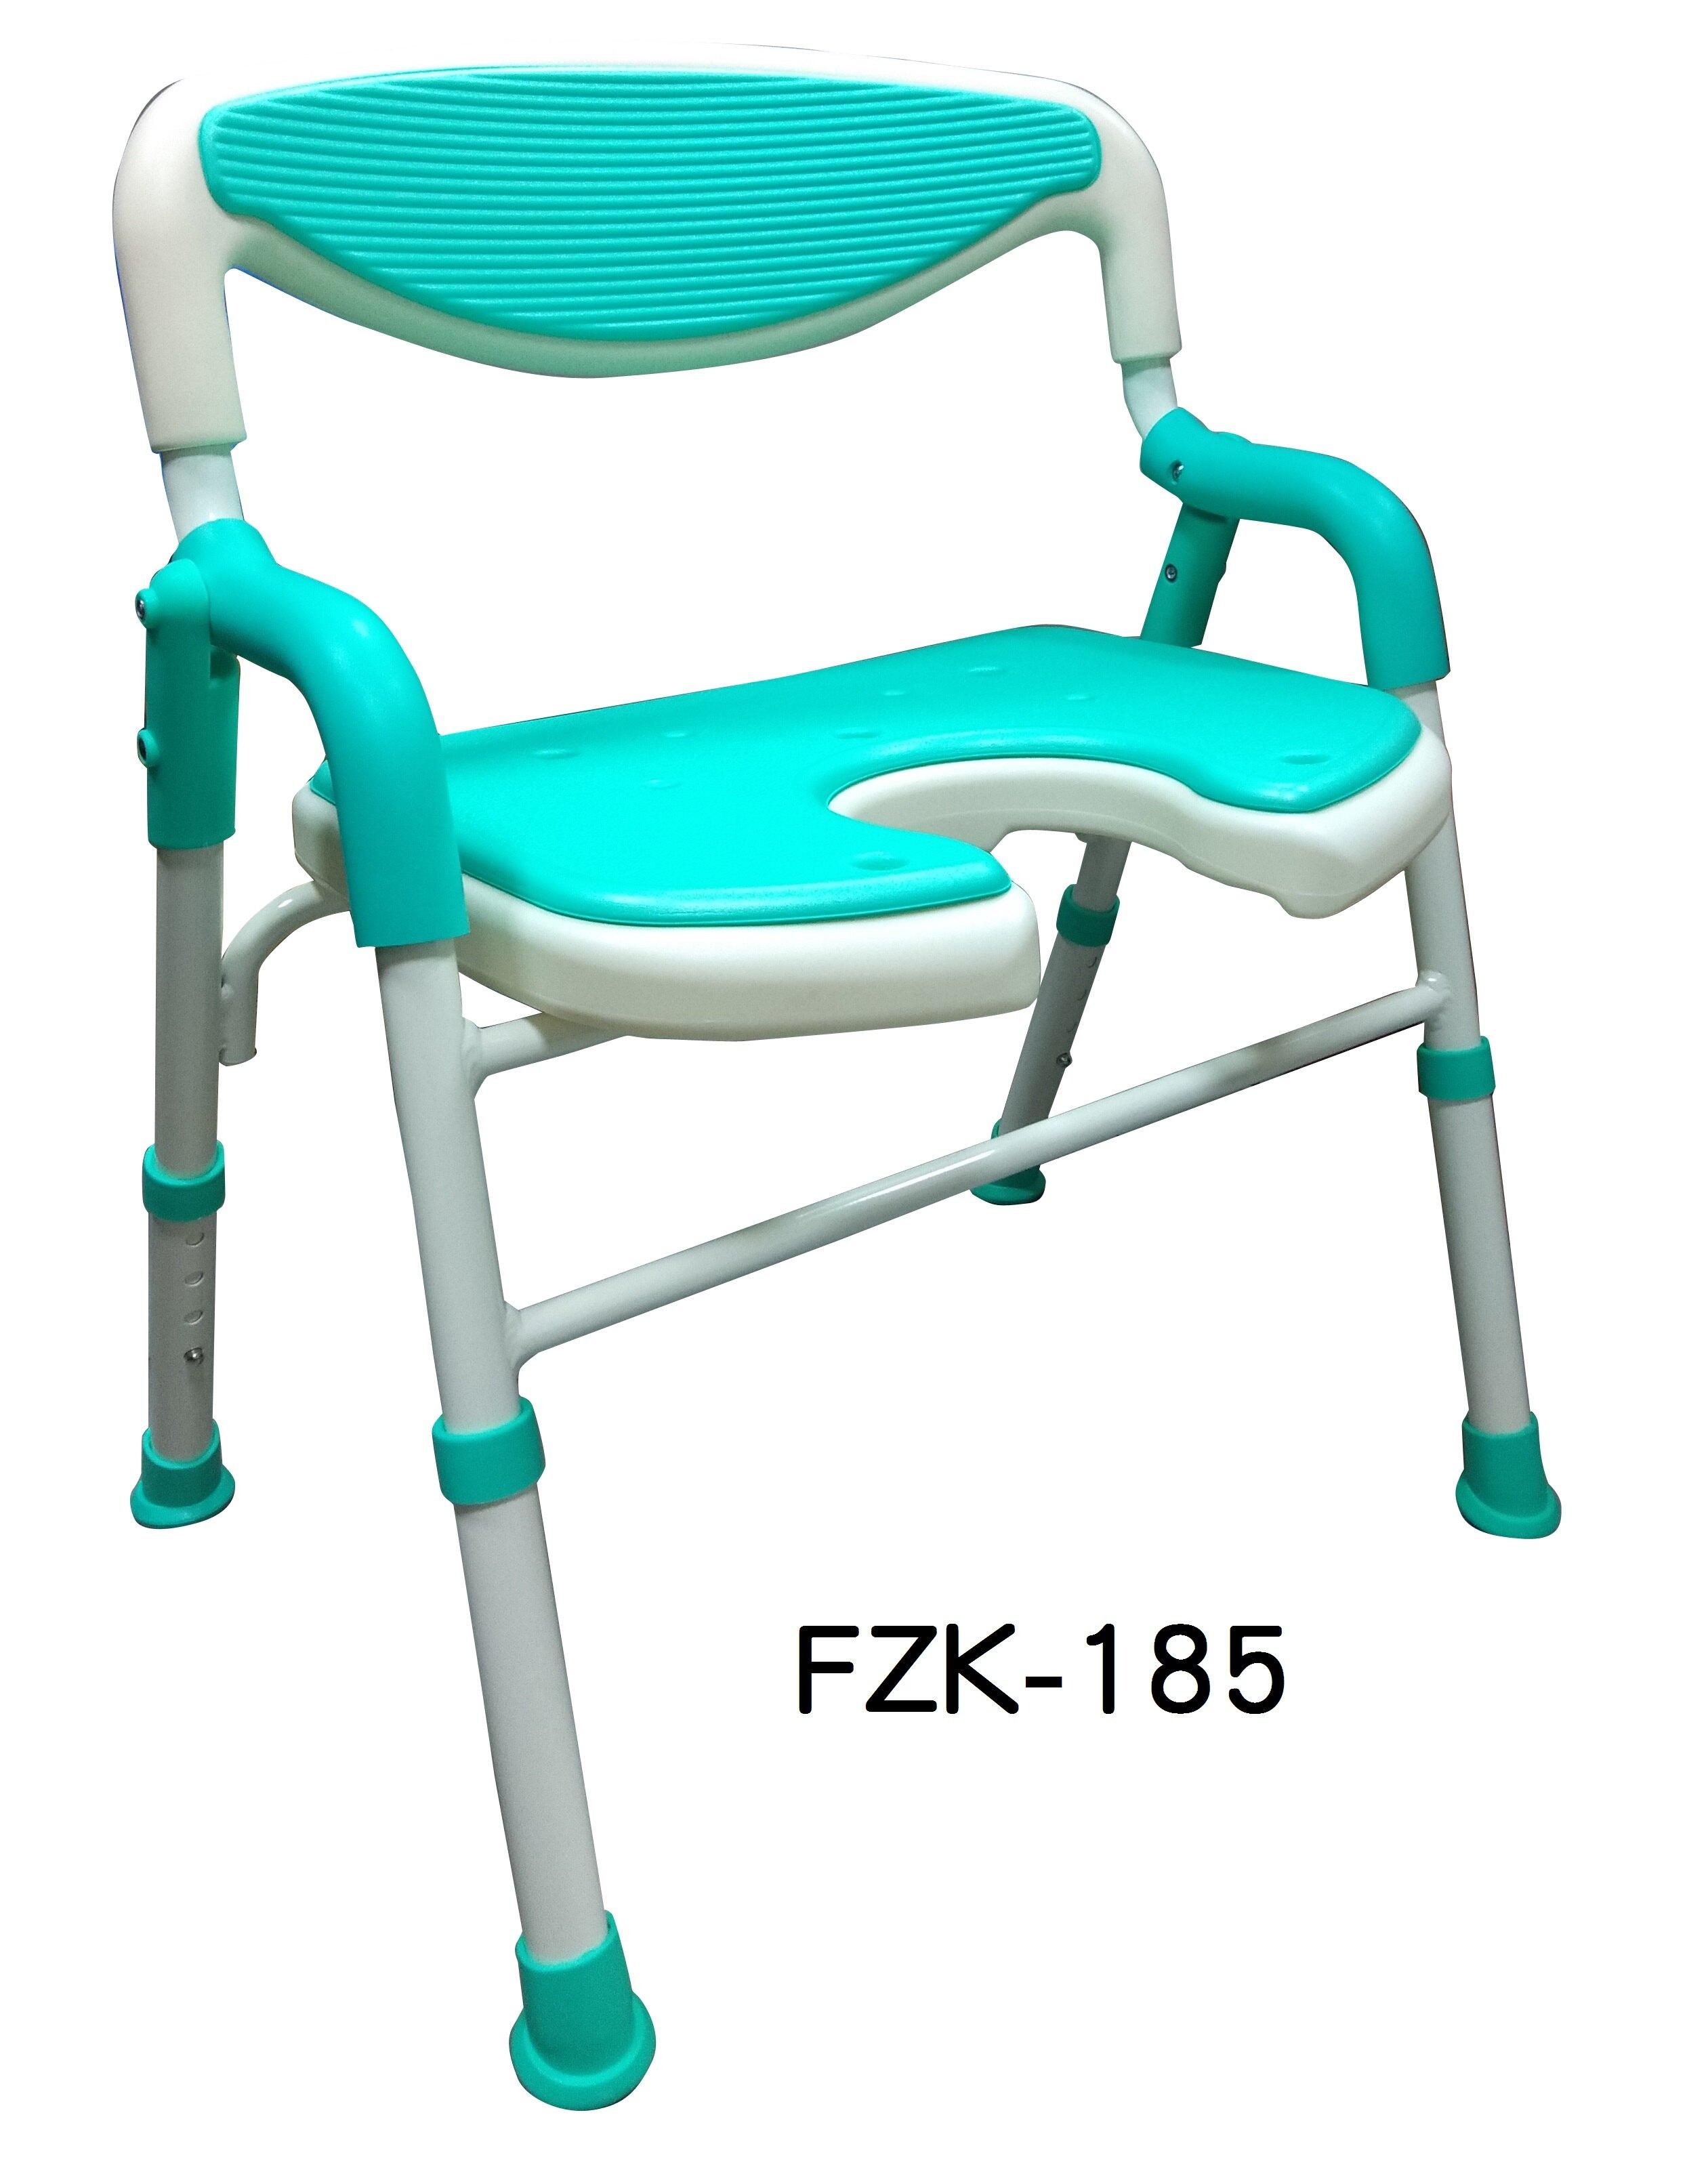 洗澡椅 沐浴椅 可收合 鋁合金 FZK-185 富士康 限重80kg